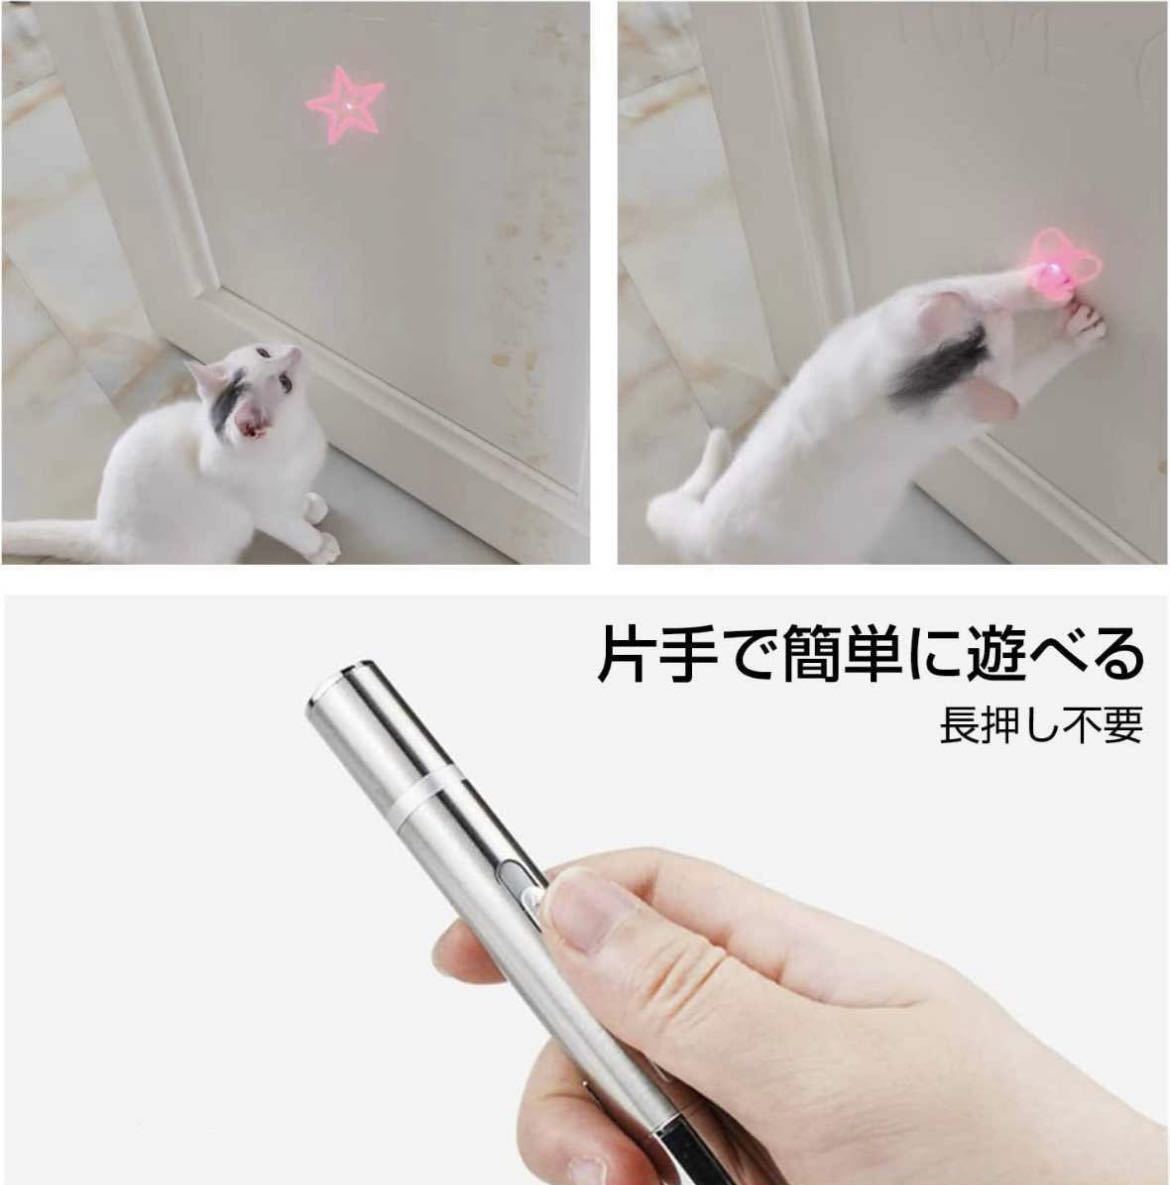 猫おもちゃ 充電式 USB 運動不足解消 おもちゃ レーザーポインター LED ライト 猫じゃらし ネコ 玩具 ストレス解消の画像6